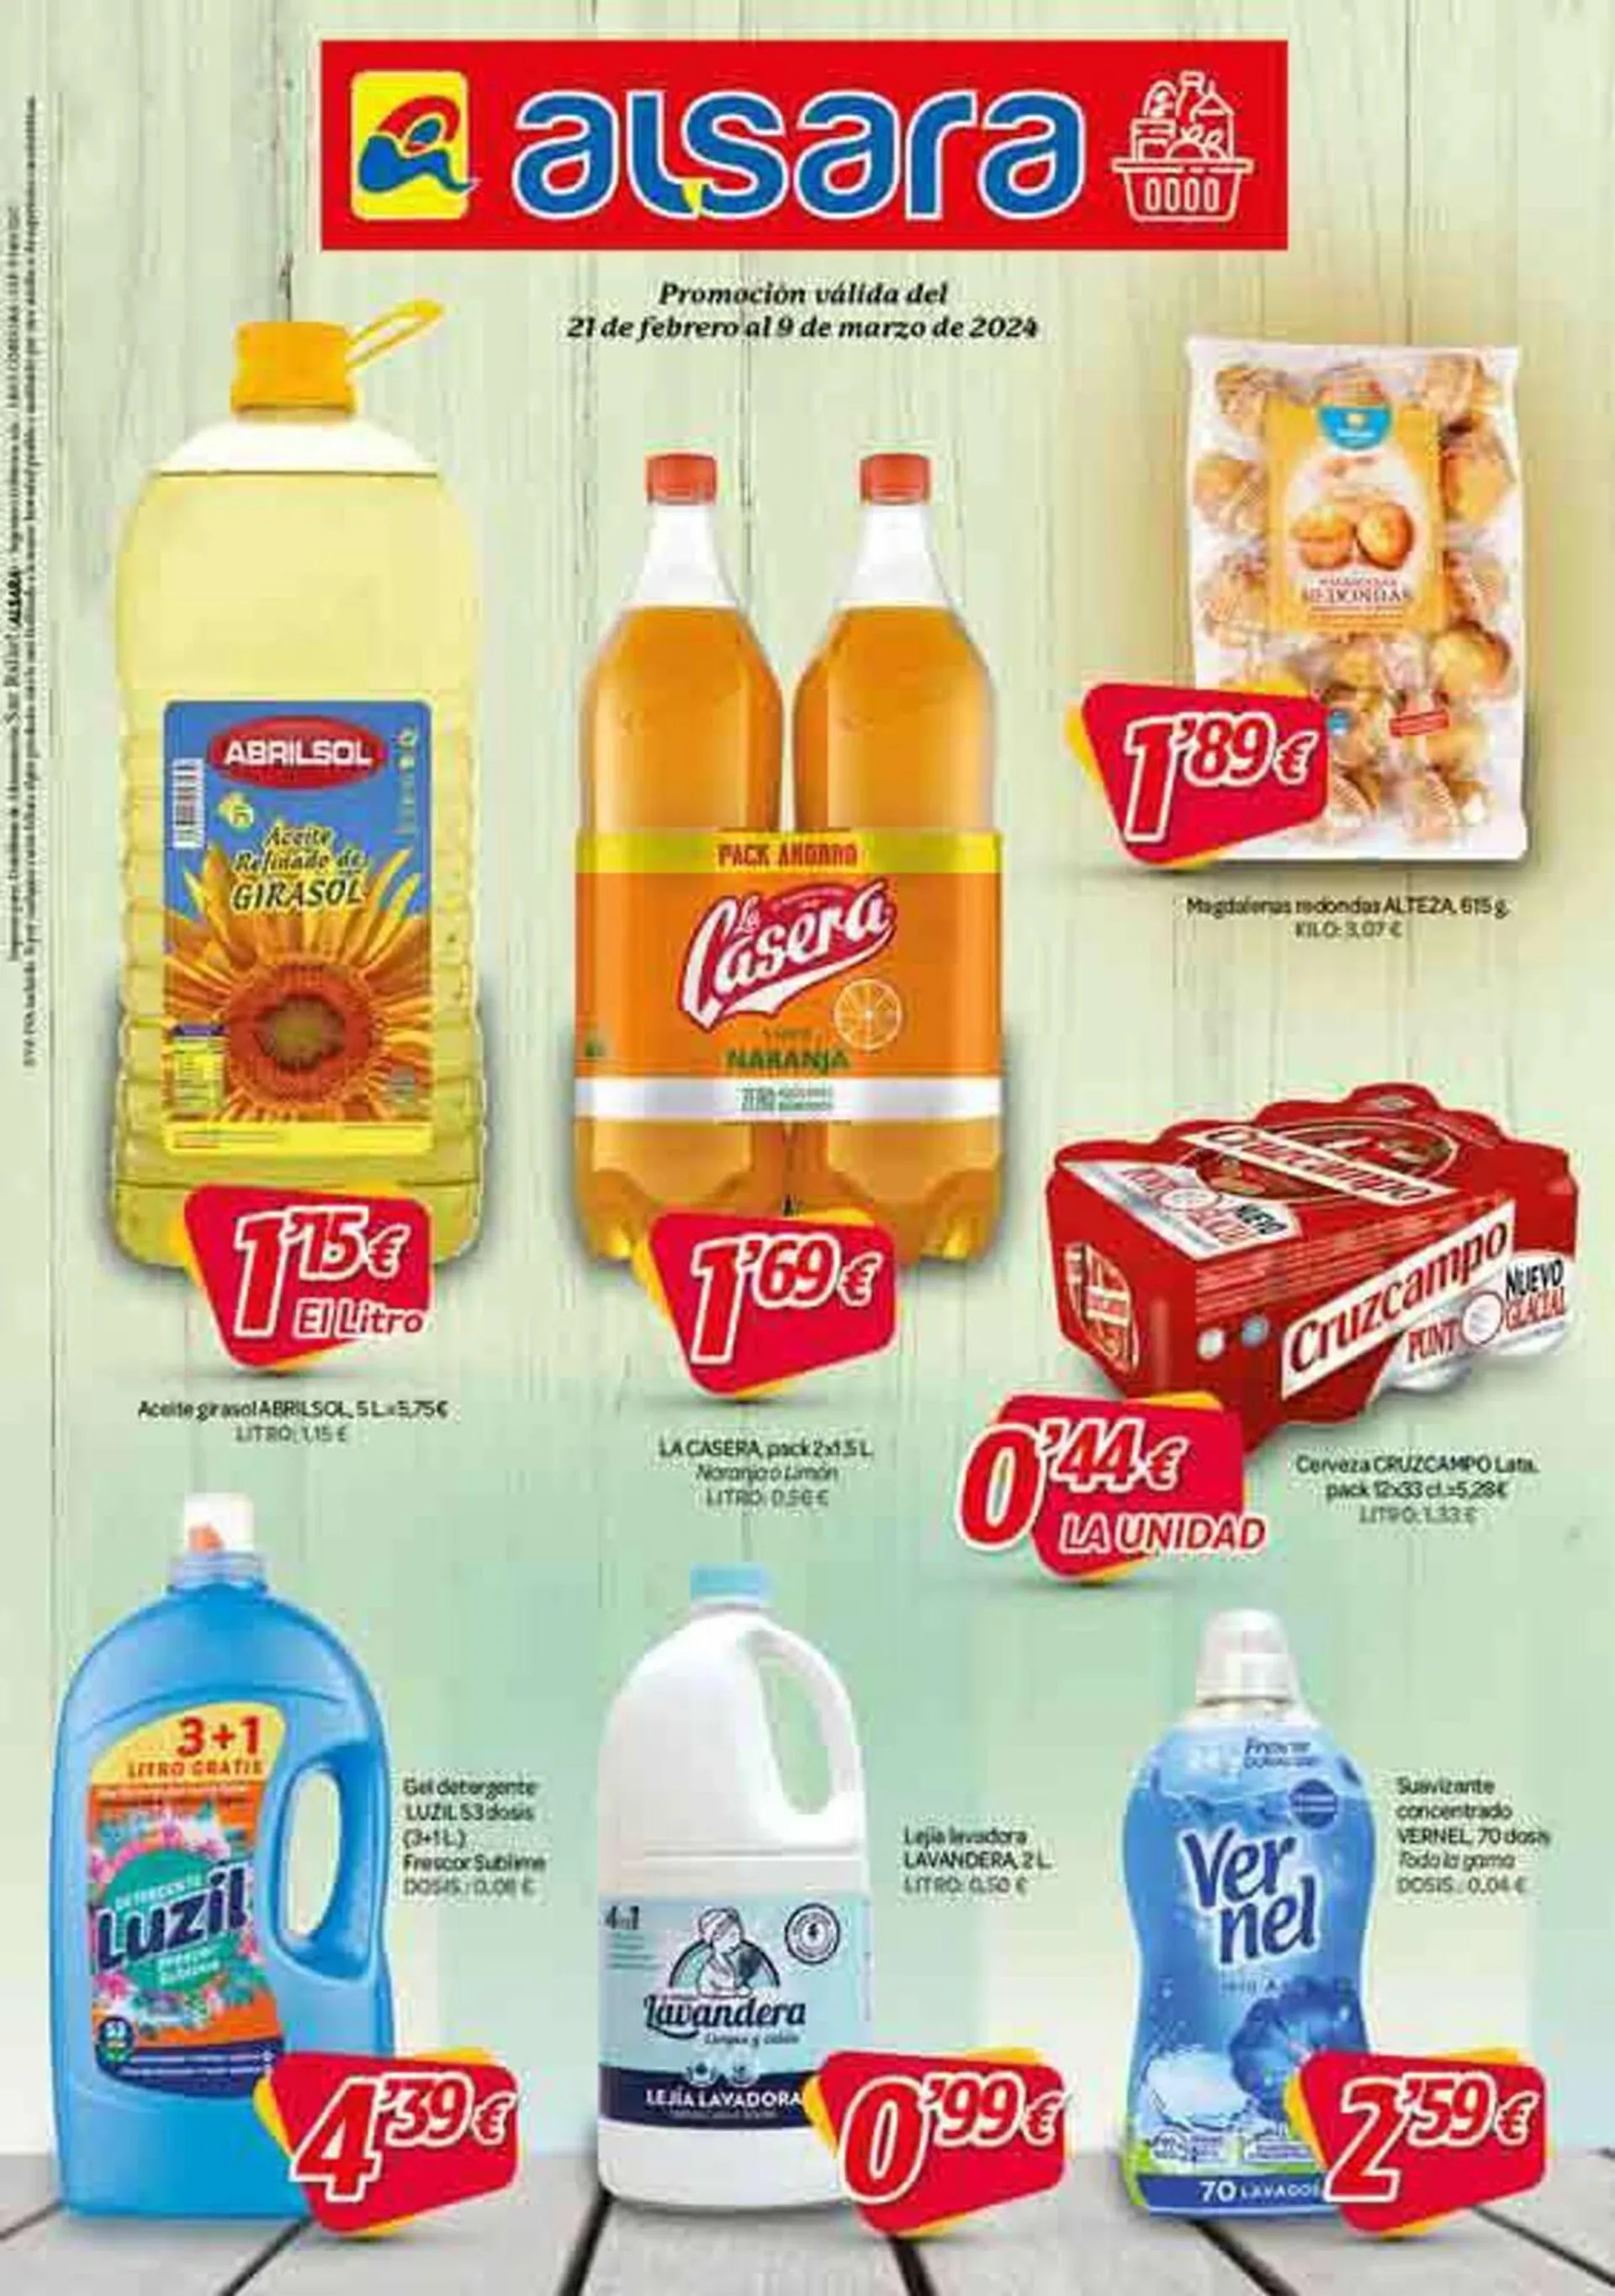 Catálogo de Folleto Alsara Supermercados 21 de febrero al 9 de marzo 2024 - Página 1